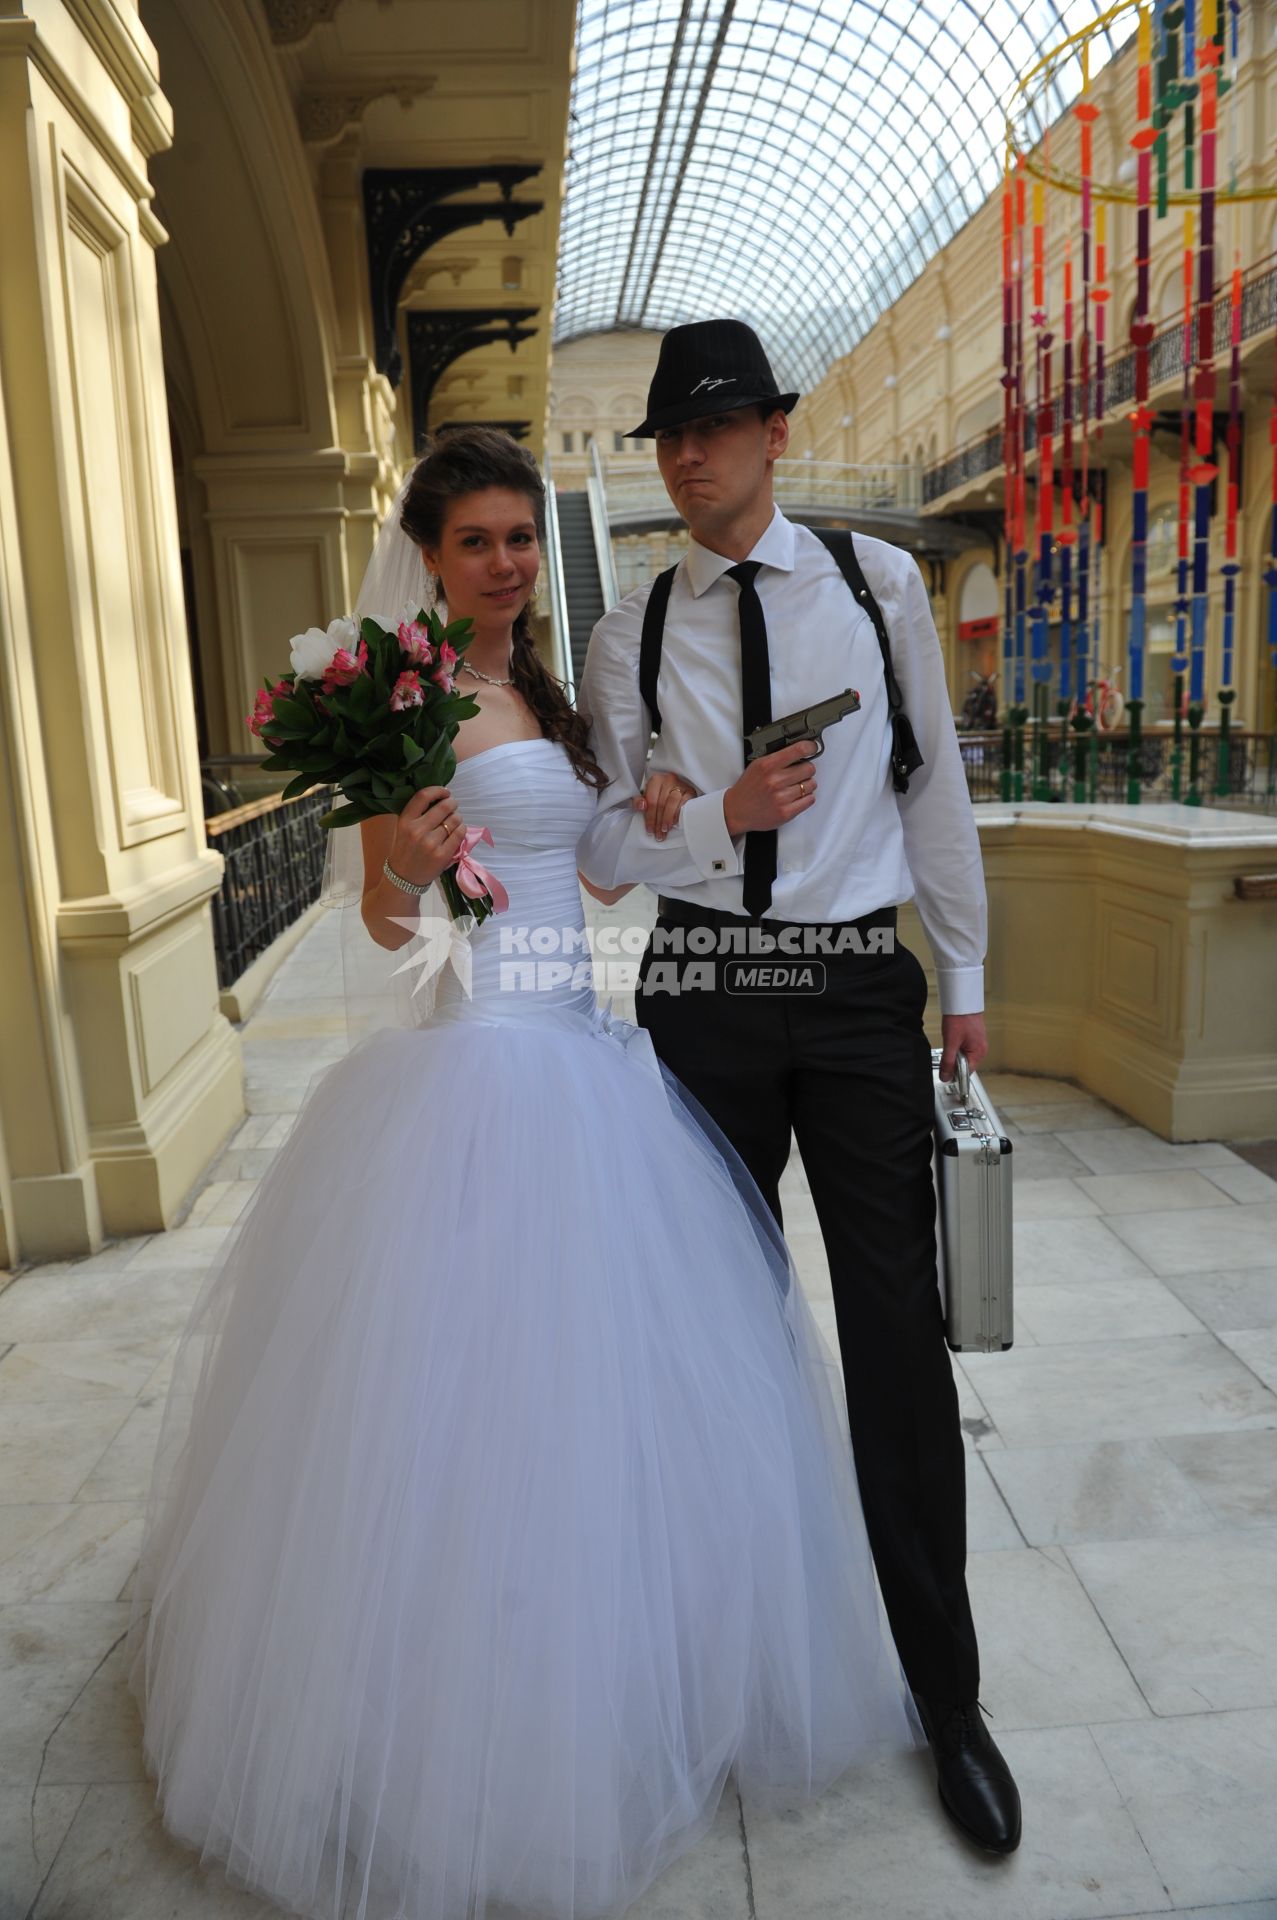 Свадьба. На снимке: жених с пистолетом и невеста с букетом.